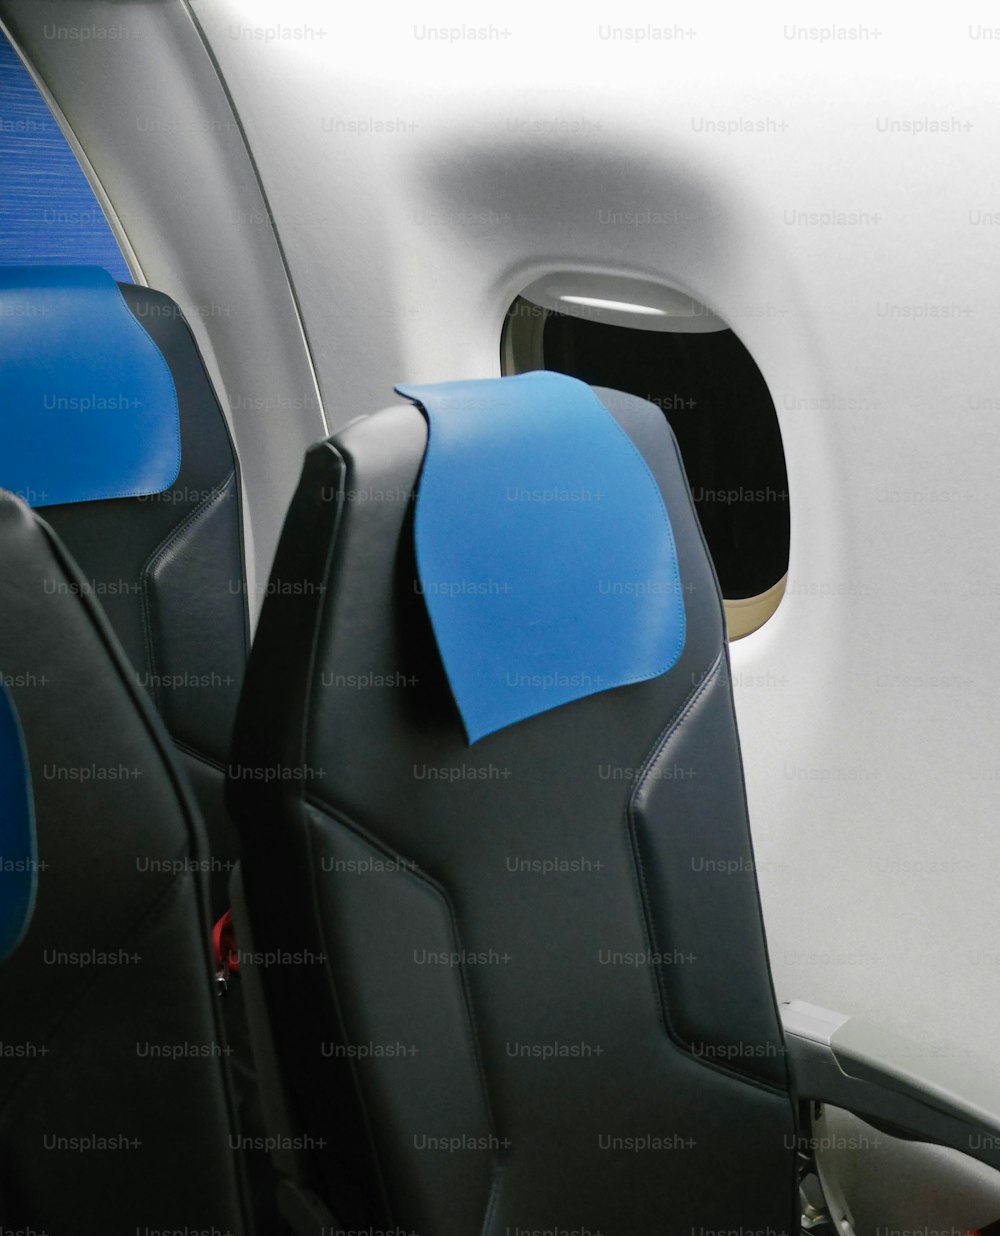 Los asientos del avión son azules y negros